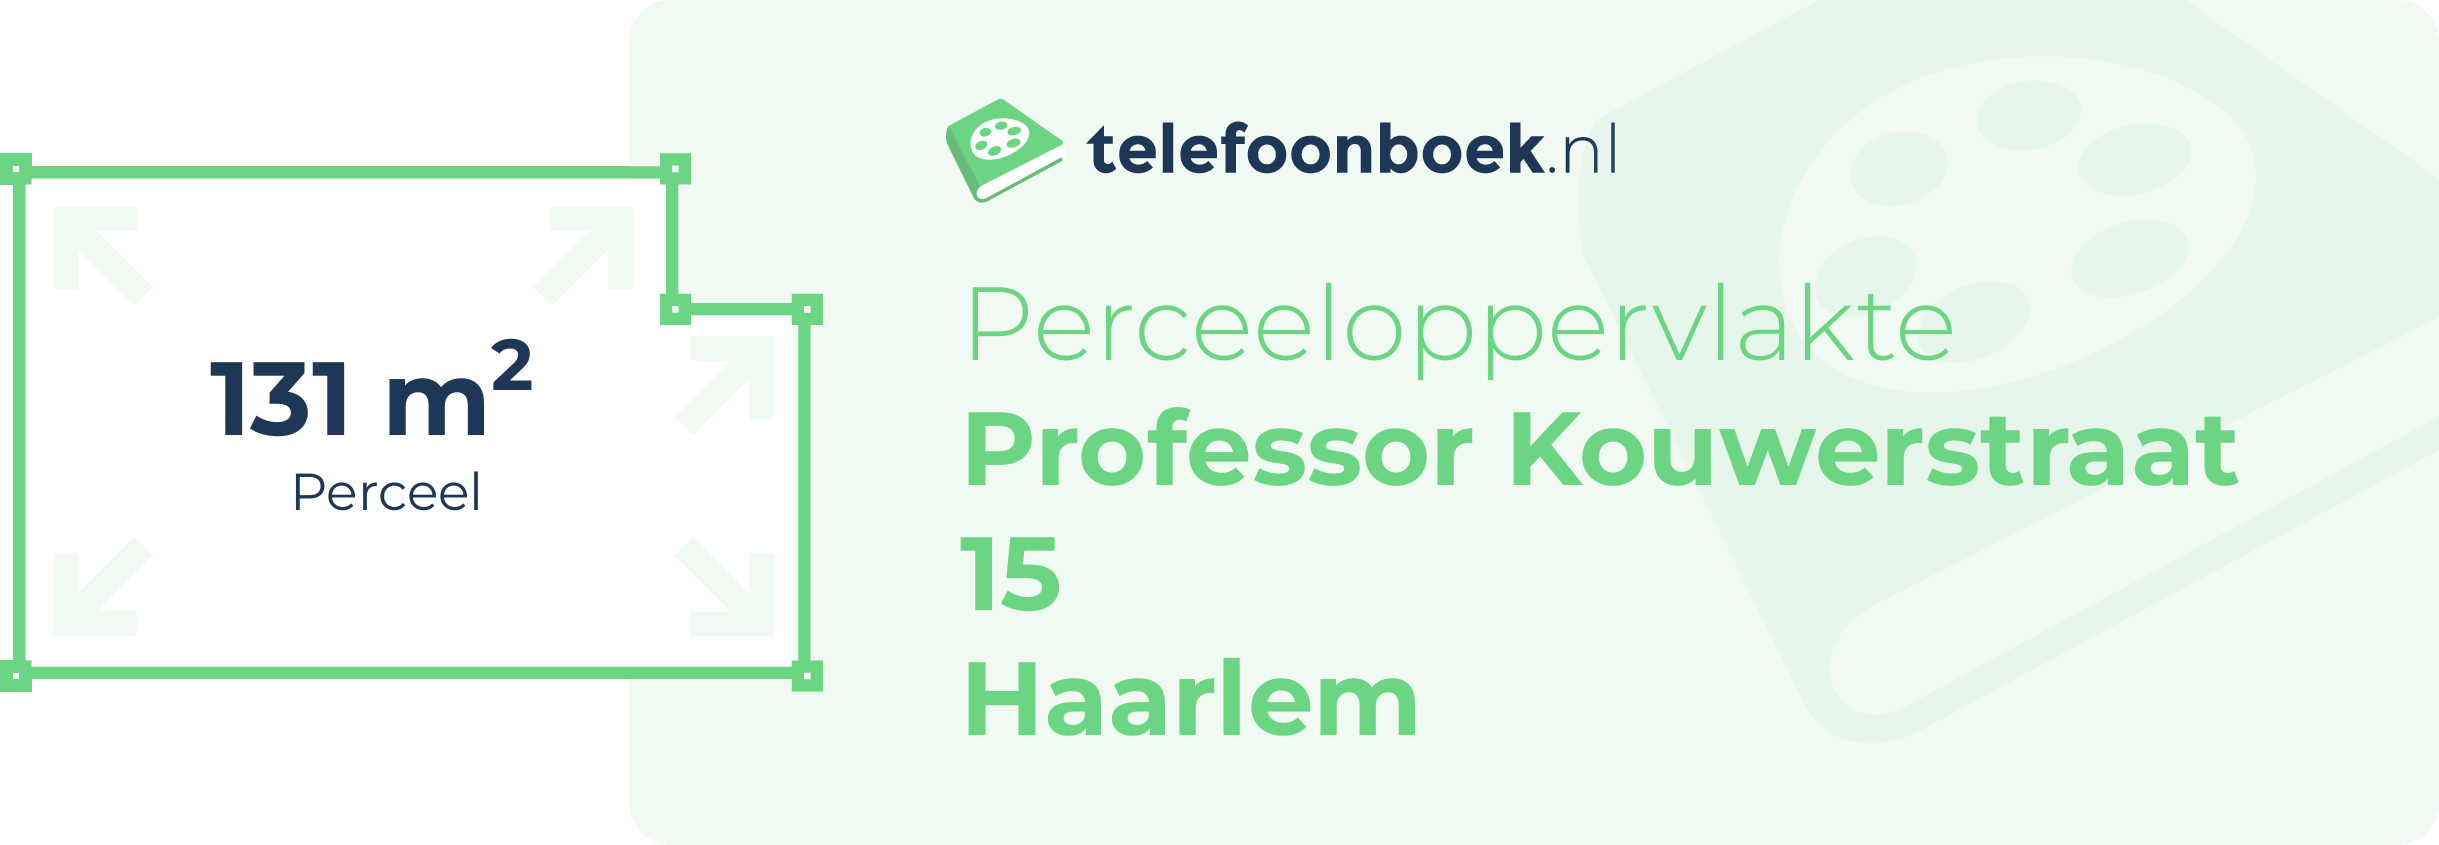 Perceeloppervlakte Professor Kouwerstraat 15 Haarlem